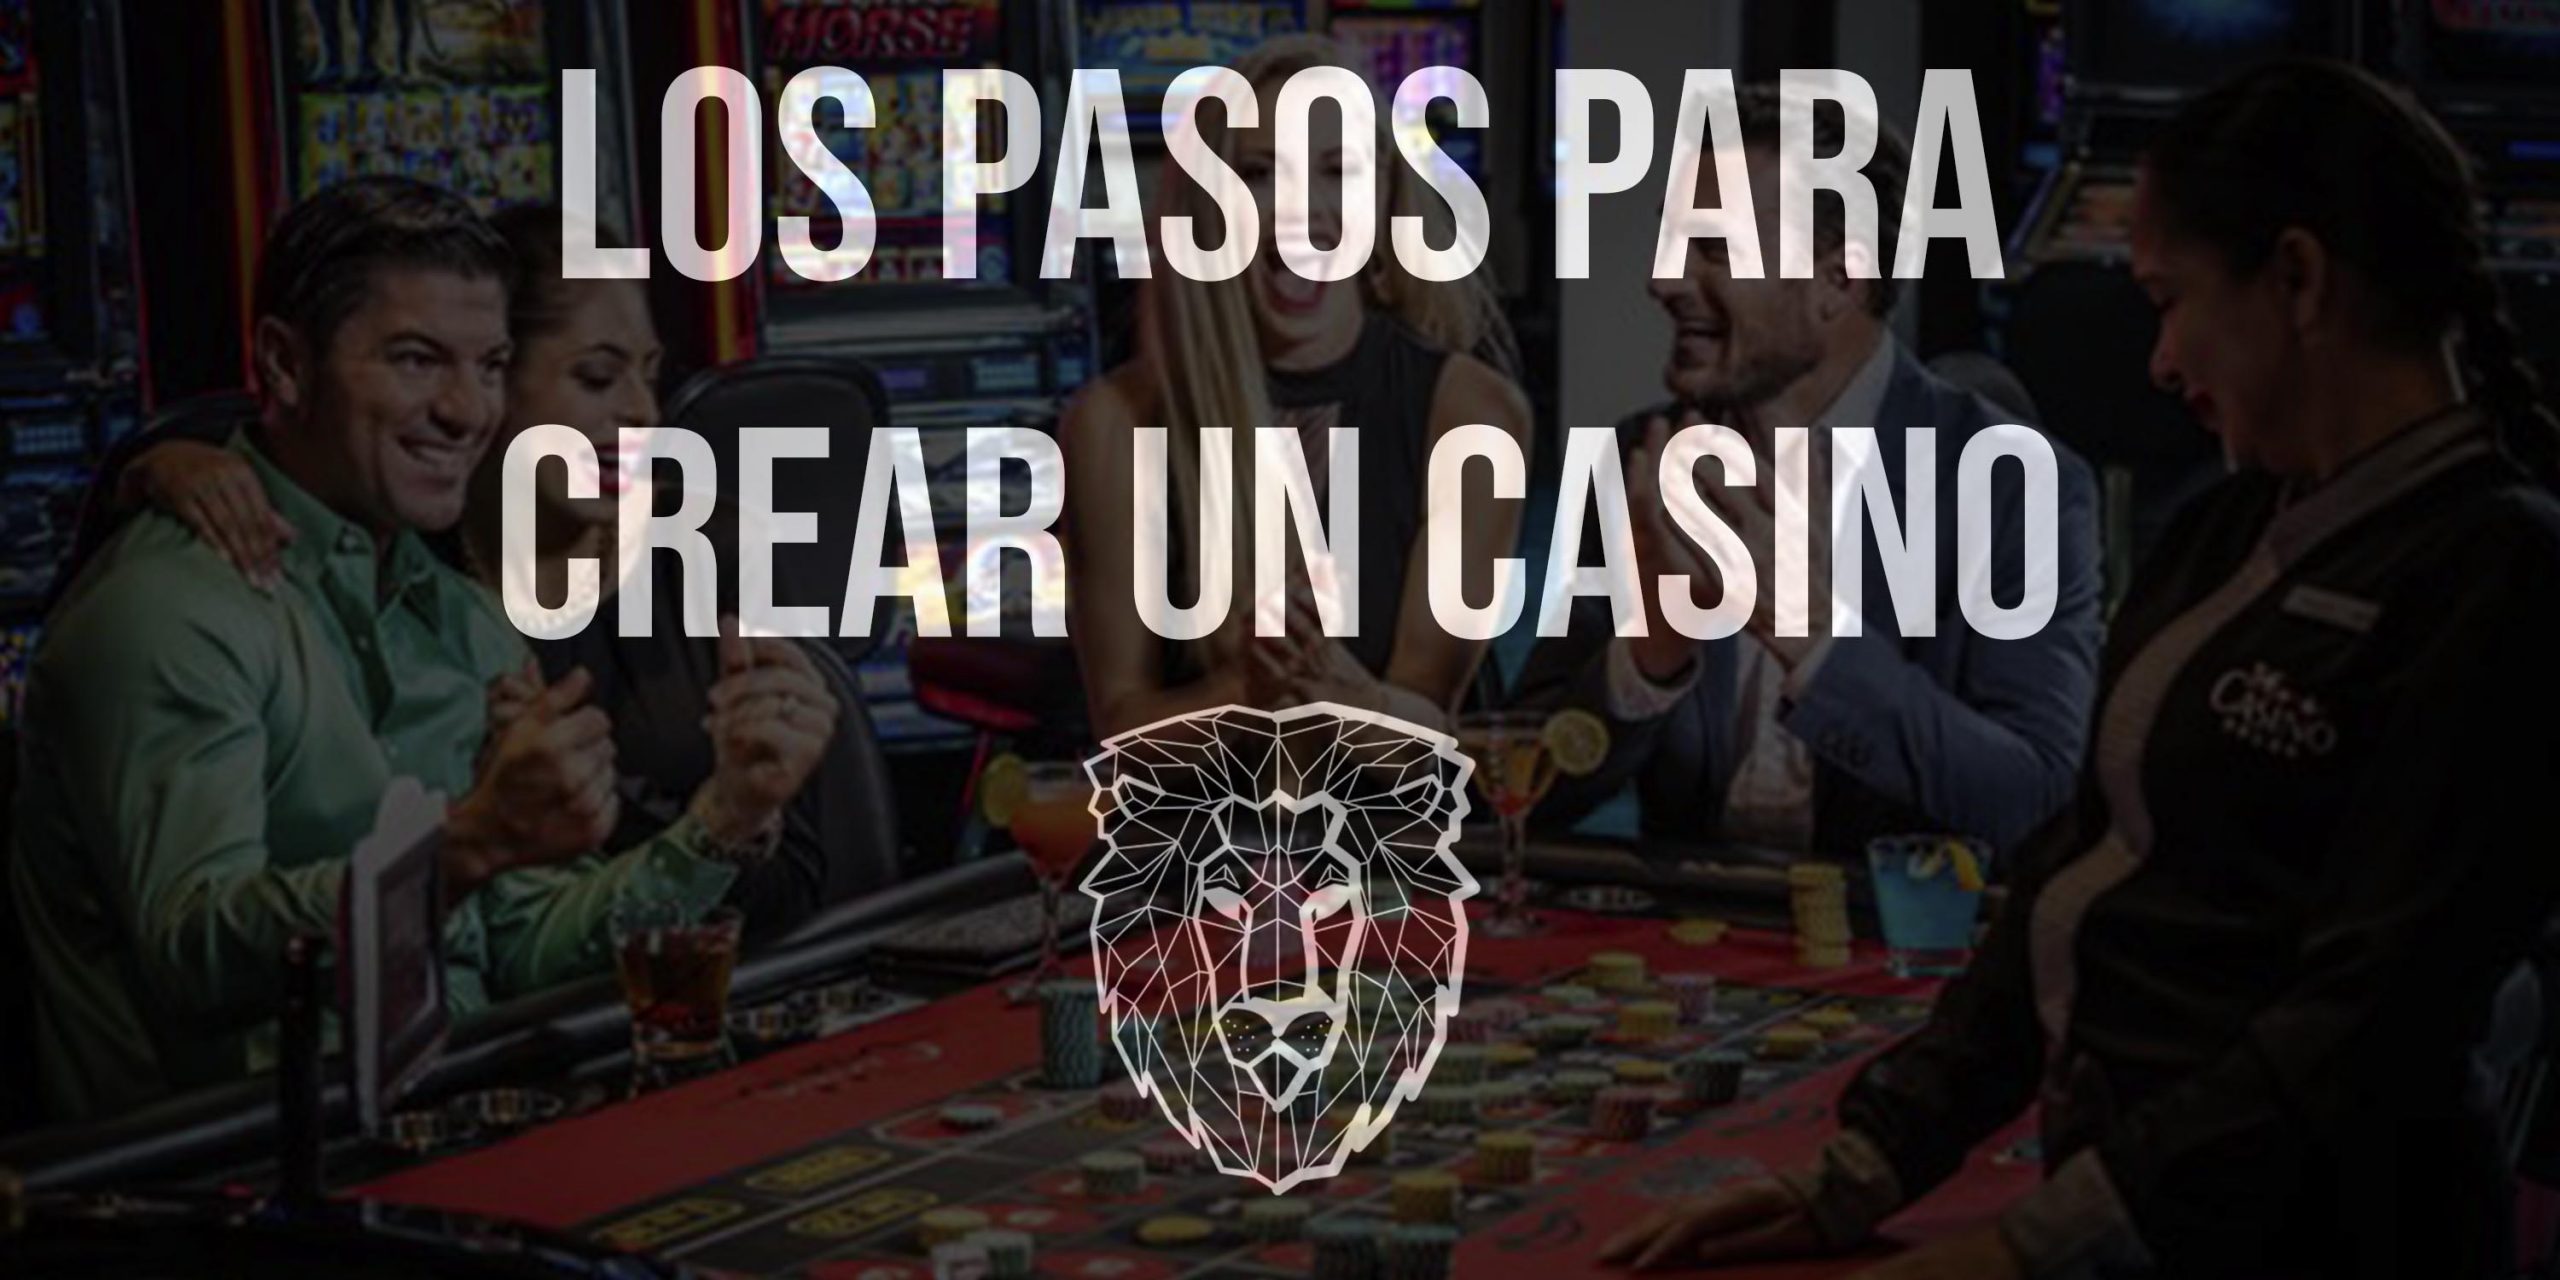 software de apuestas deportivas perú, es rentable montar una administracion de loteria, pasos para crear un casino